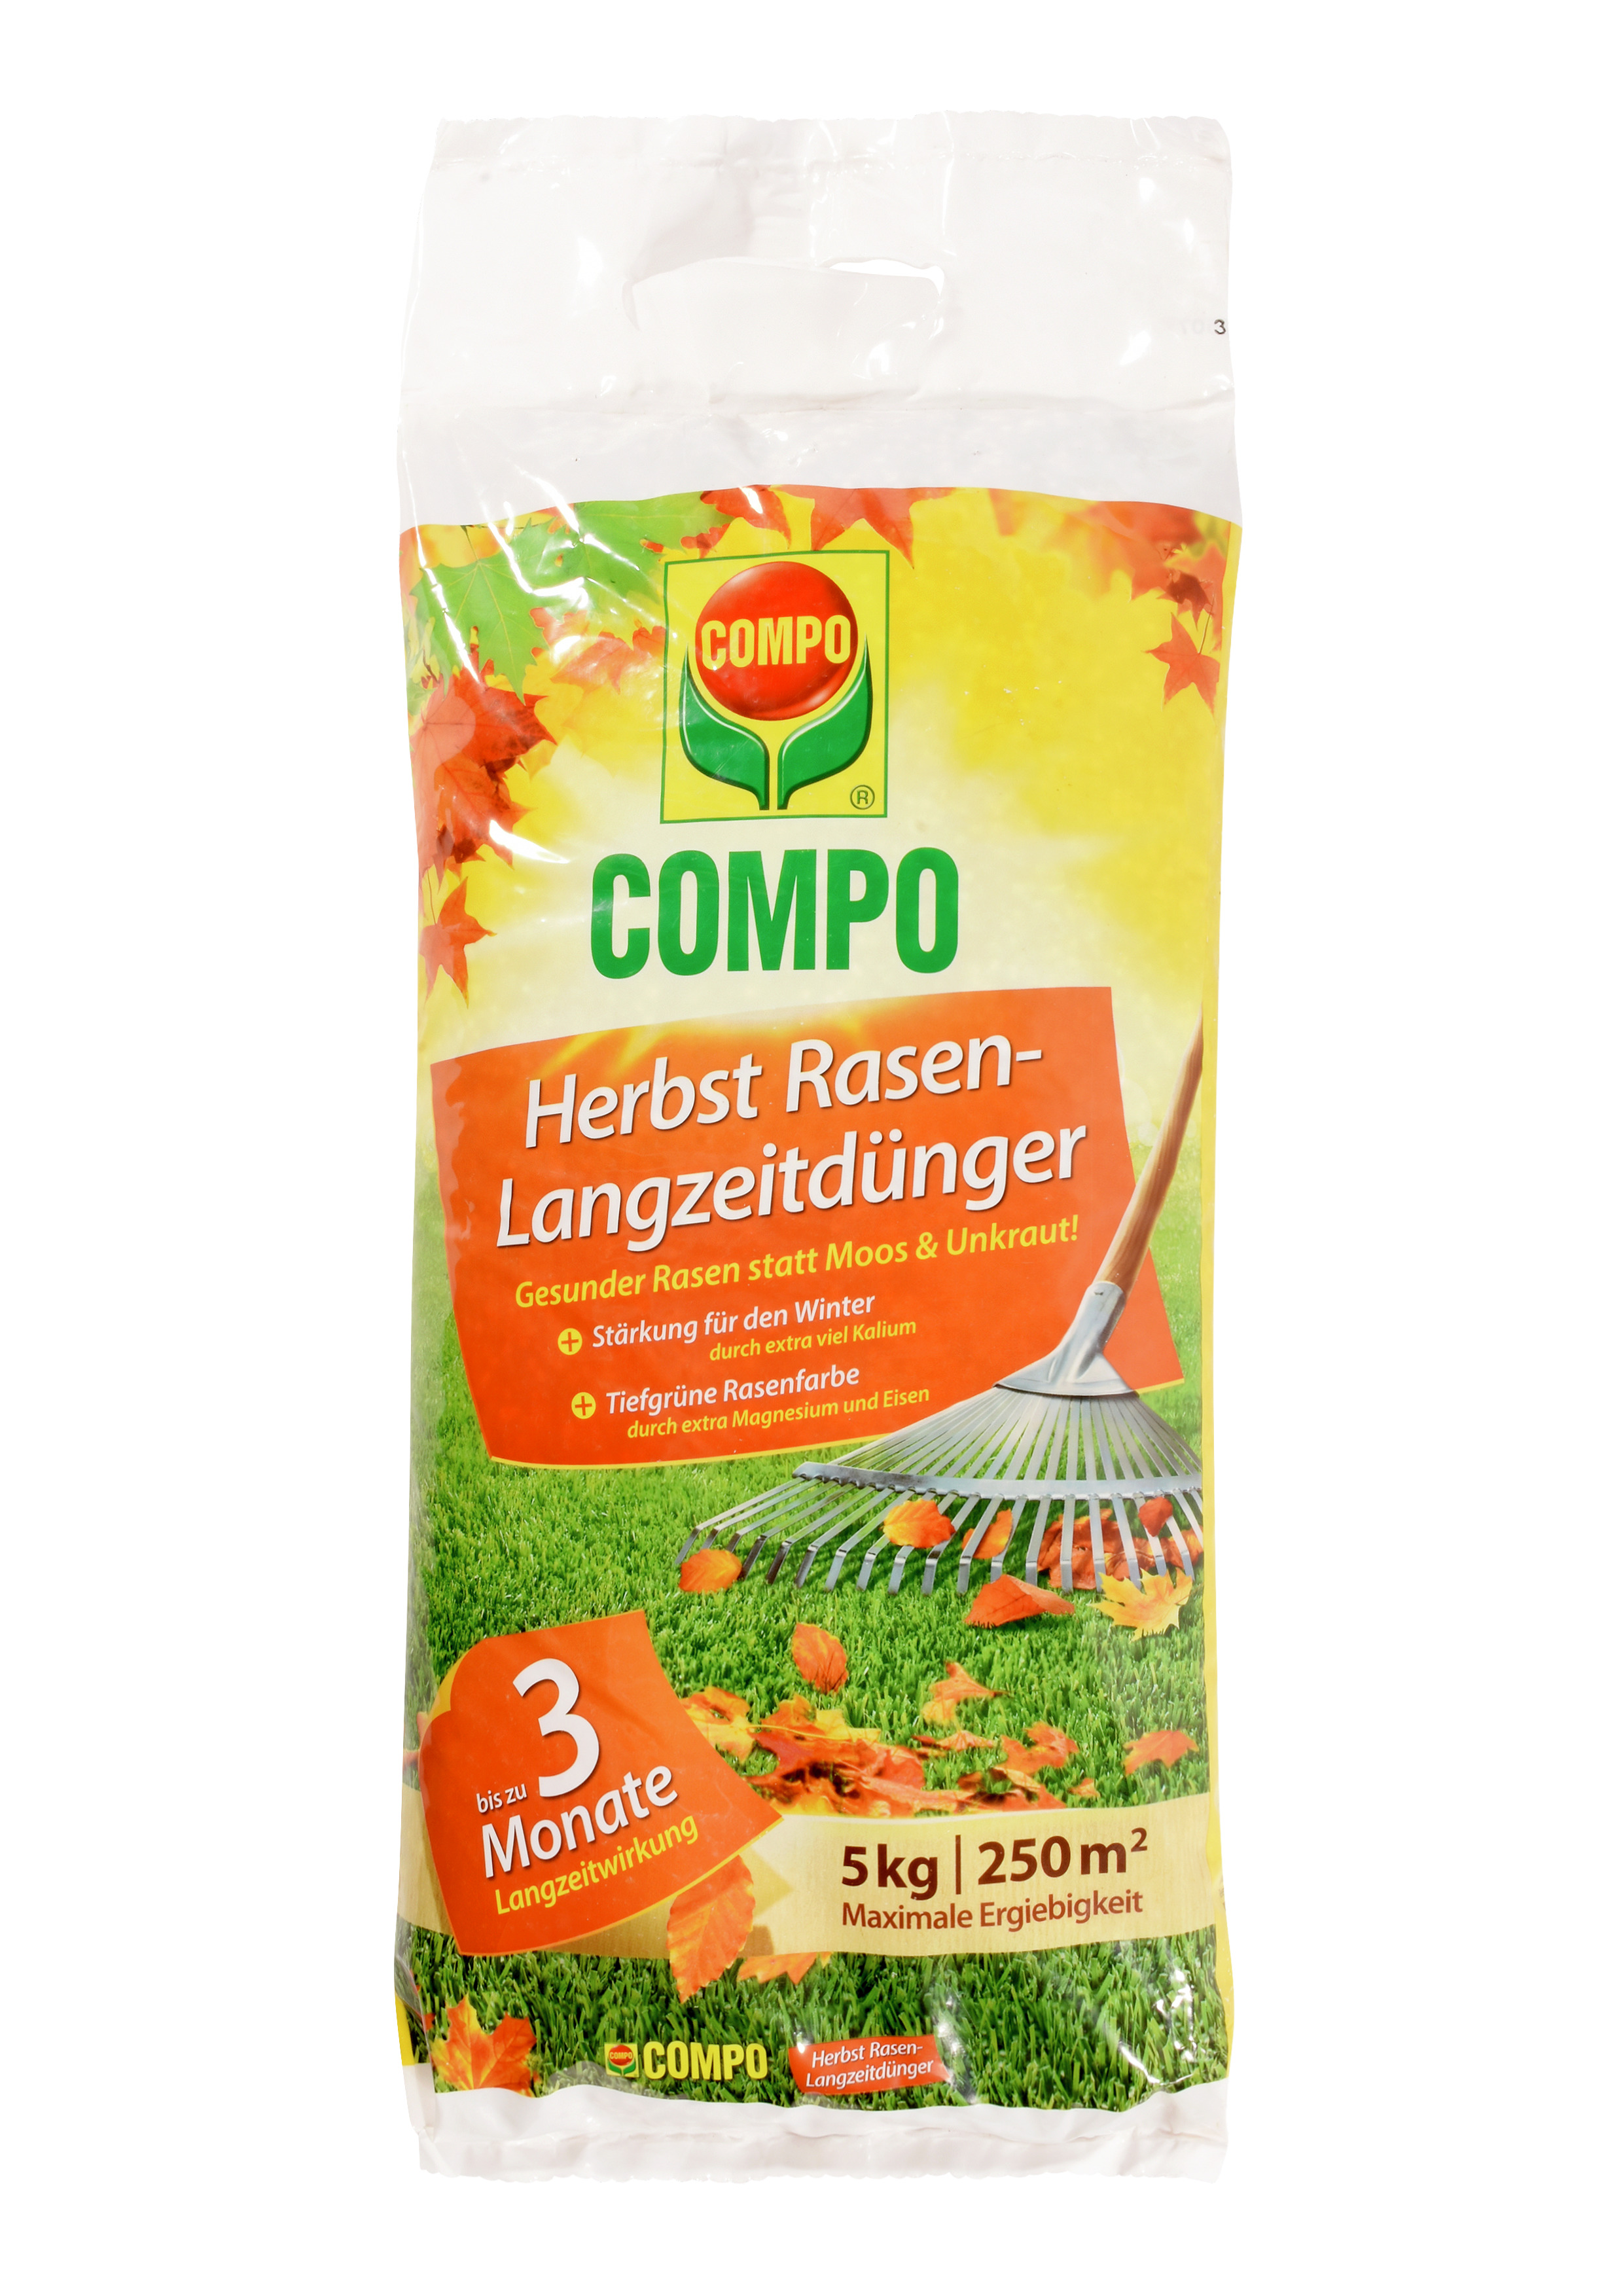 COMPO COMPO Herbst Rasen-Langzeitdünger 5kg Compo EREG für 250qm